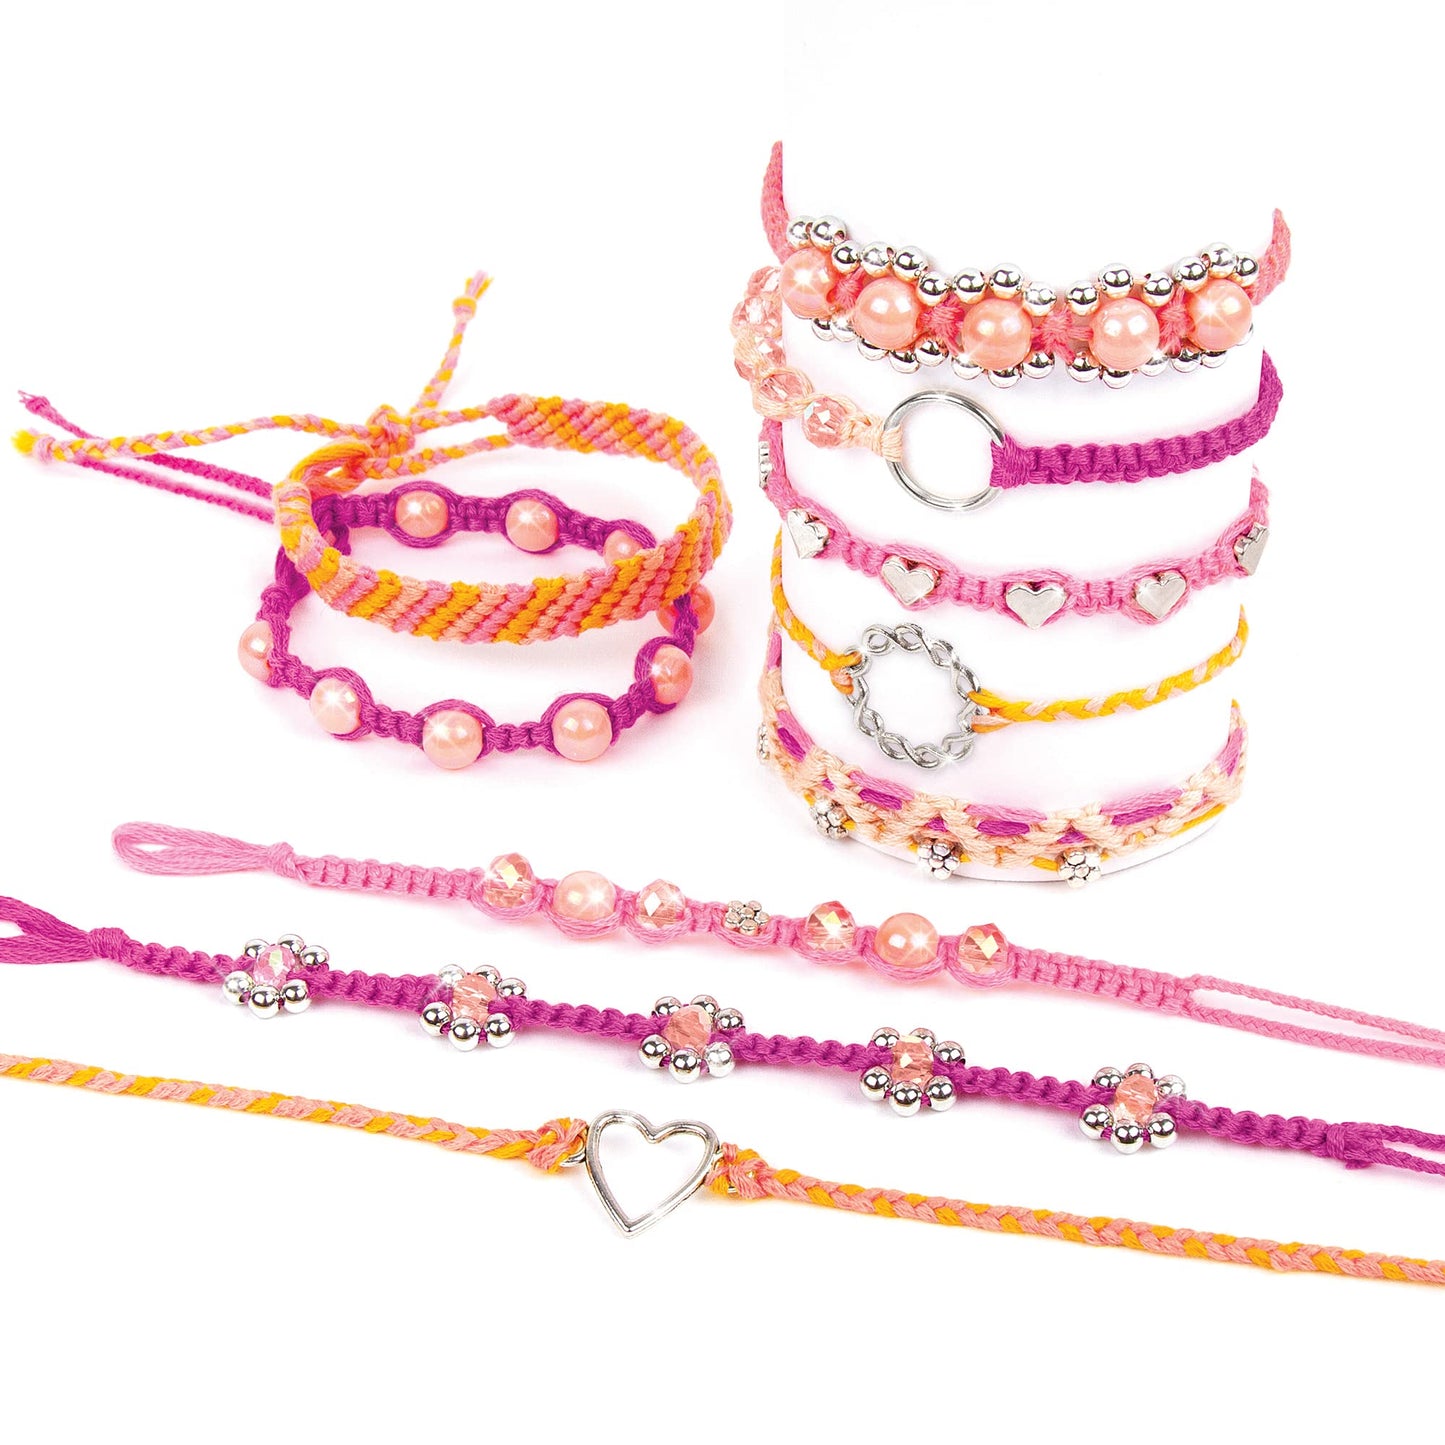 Make It Real - Macrame Friendship Bracelet Making Kit for Girls - Kids String Bracelet Making Kit - Friendship Bracelet Craft Kit w/Thread, Beads &